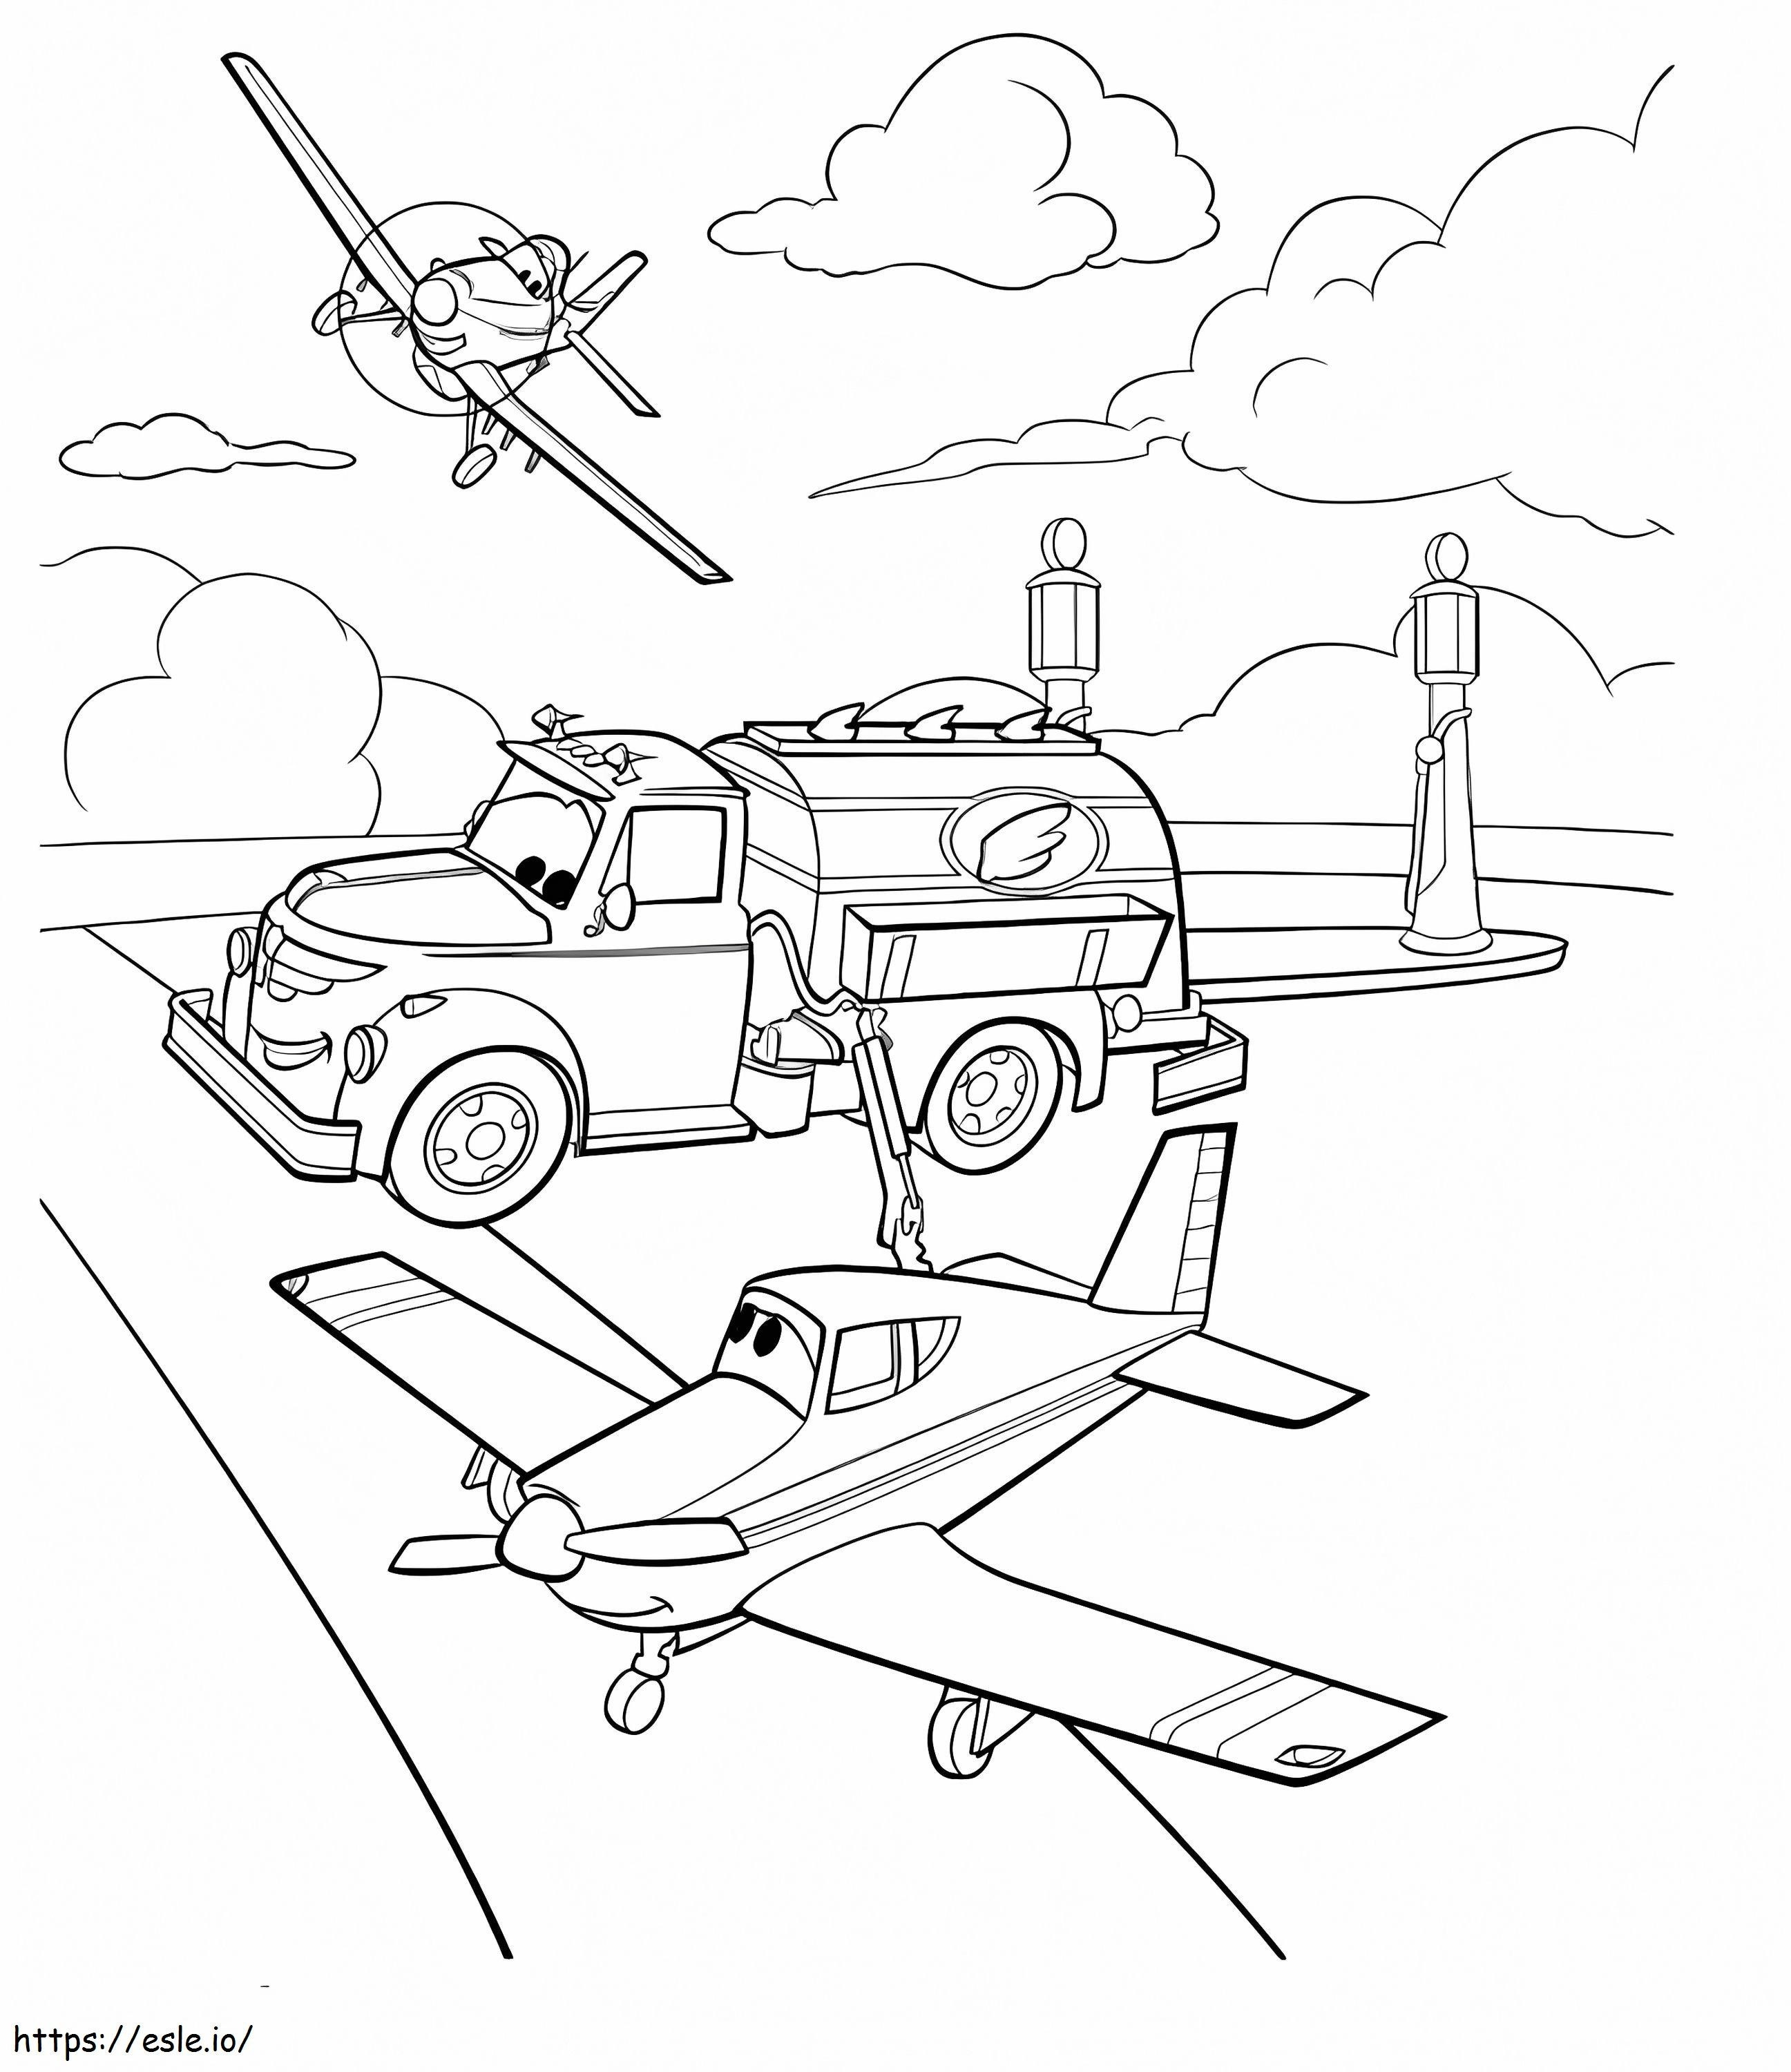 Aviones de dibujos animados para colorear